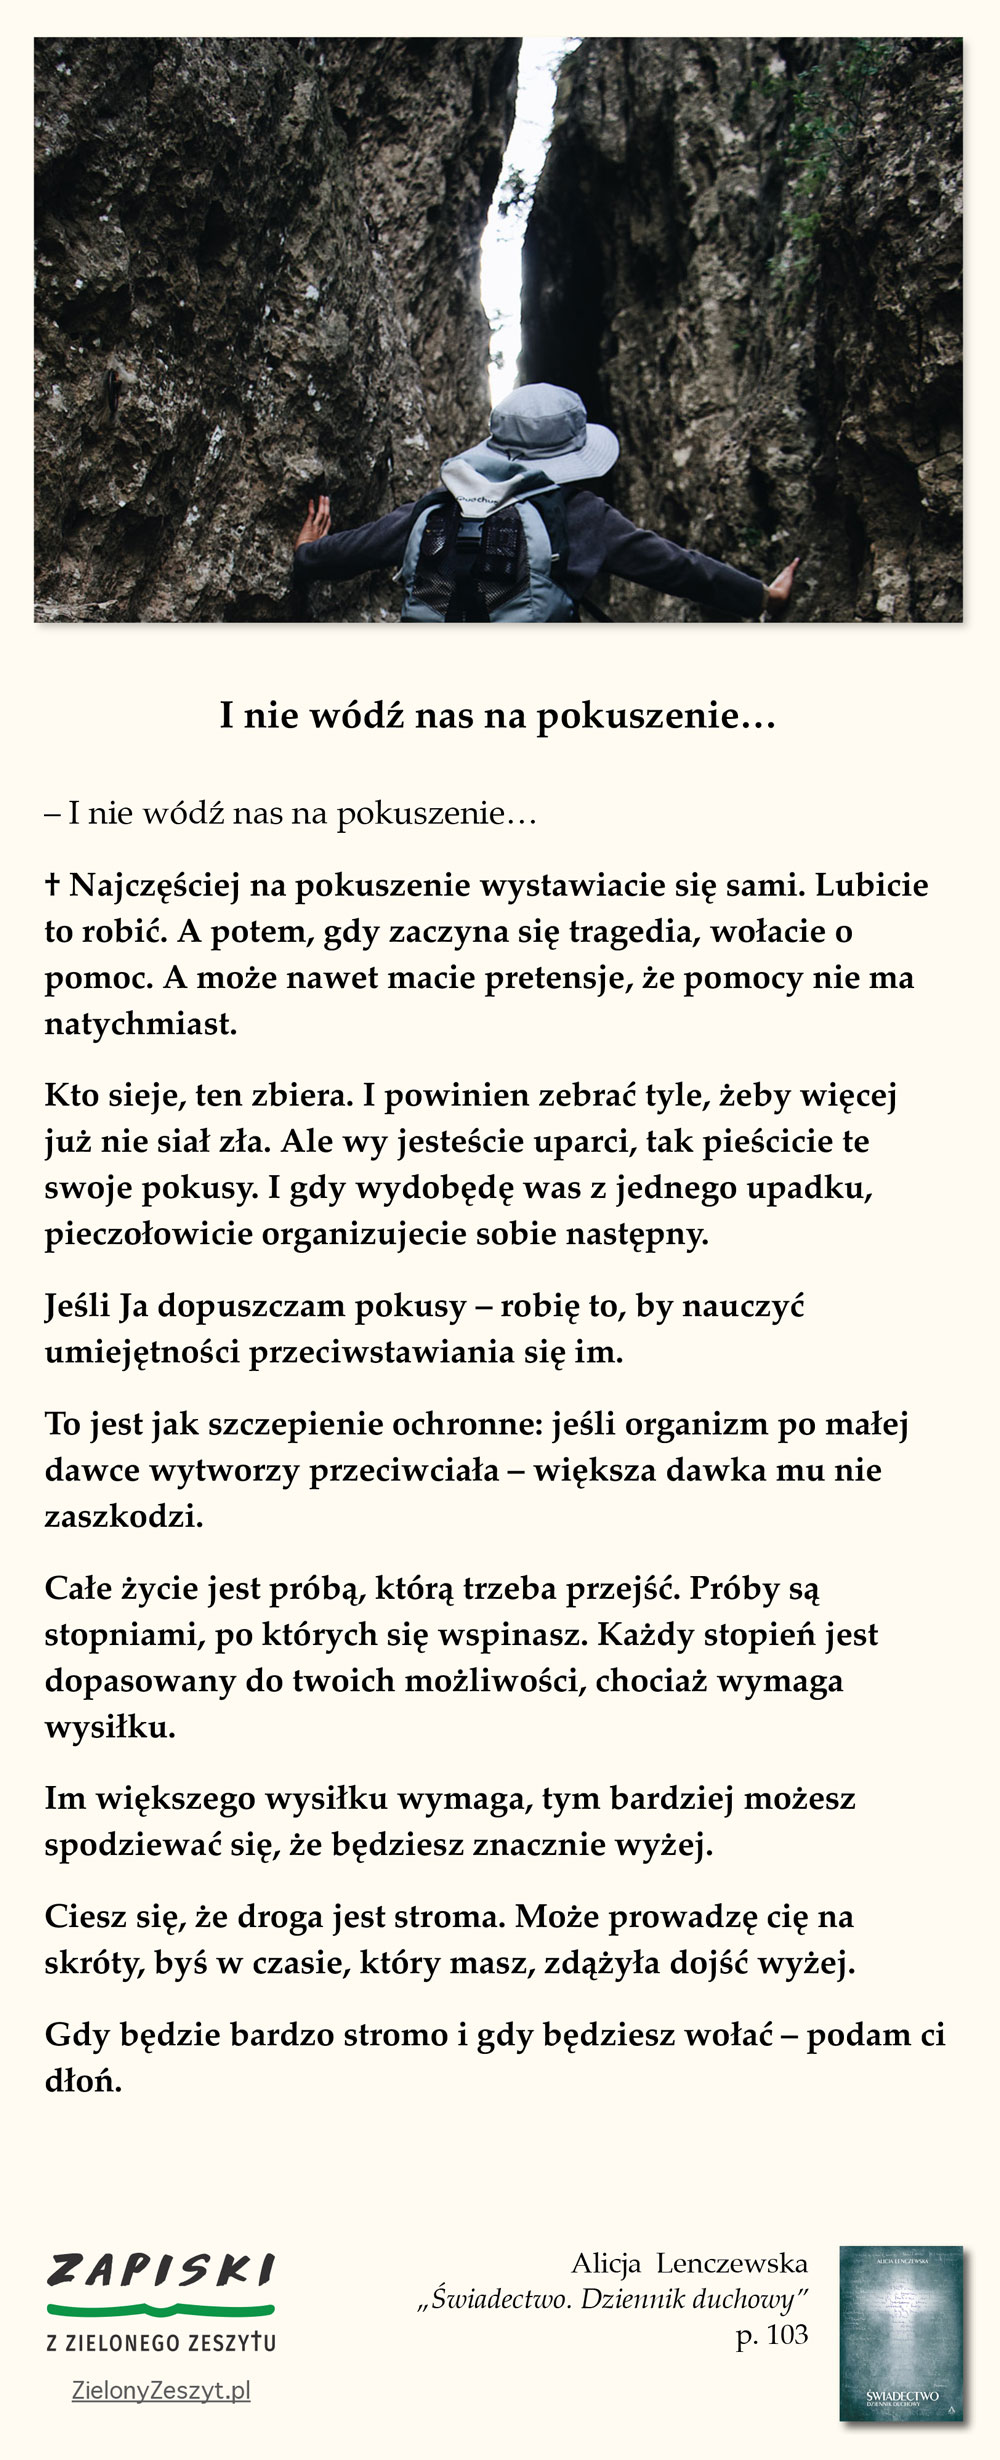 Alicja Lenczewska, „Świadectwo. Dziennik duchowy”, p. 103 (I nie wódź nas na pokuszenie…)